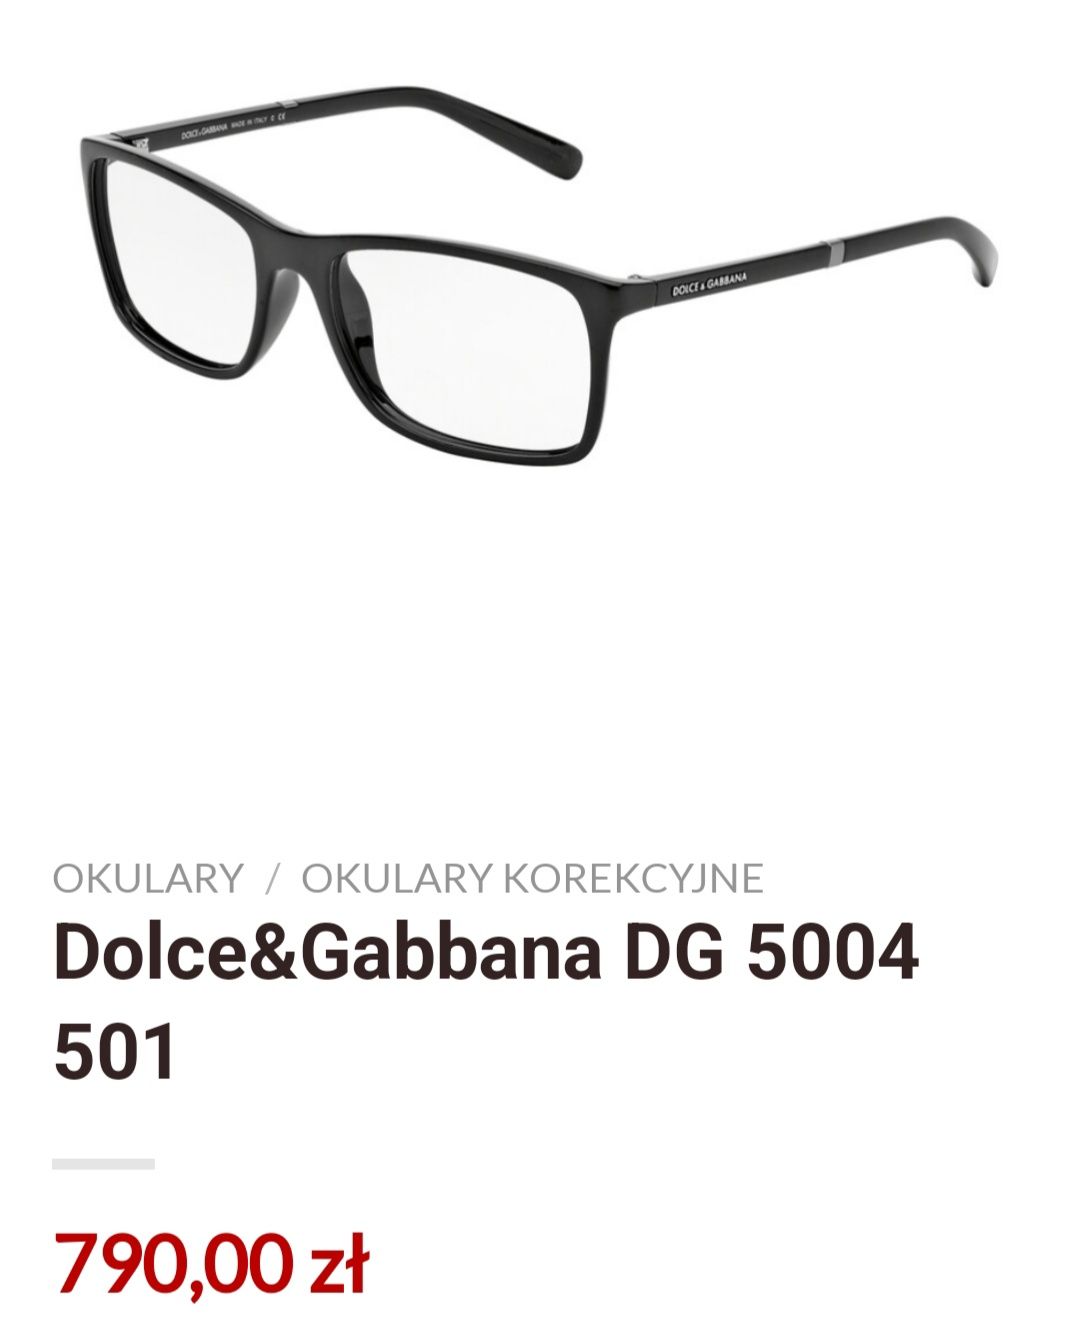 Oprawki męskie Dolce&Gabbana DG 5004  501